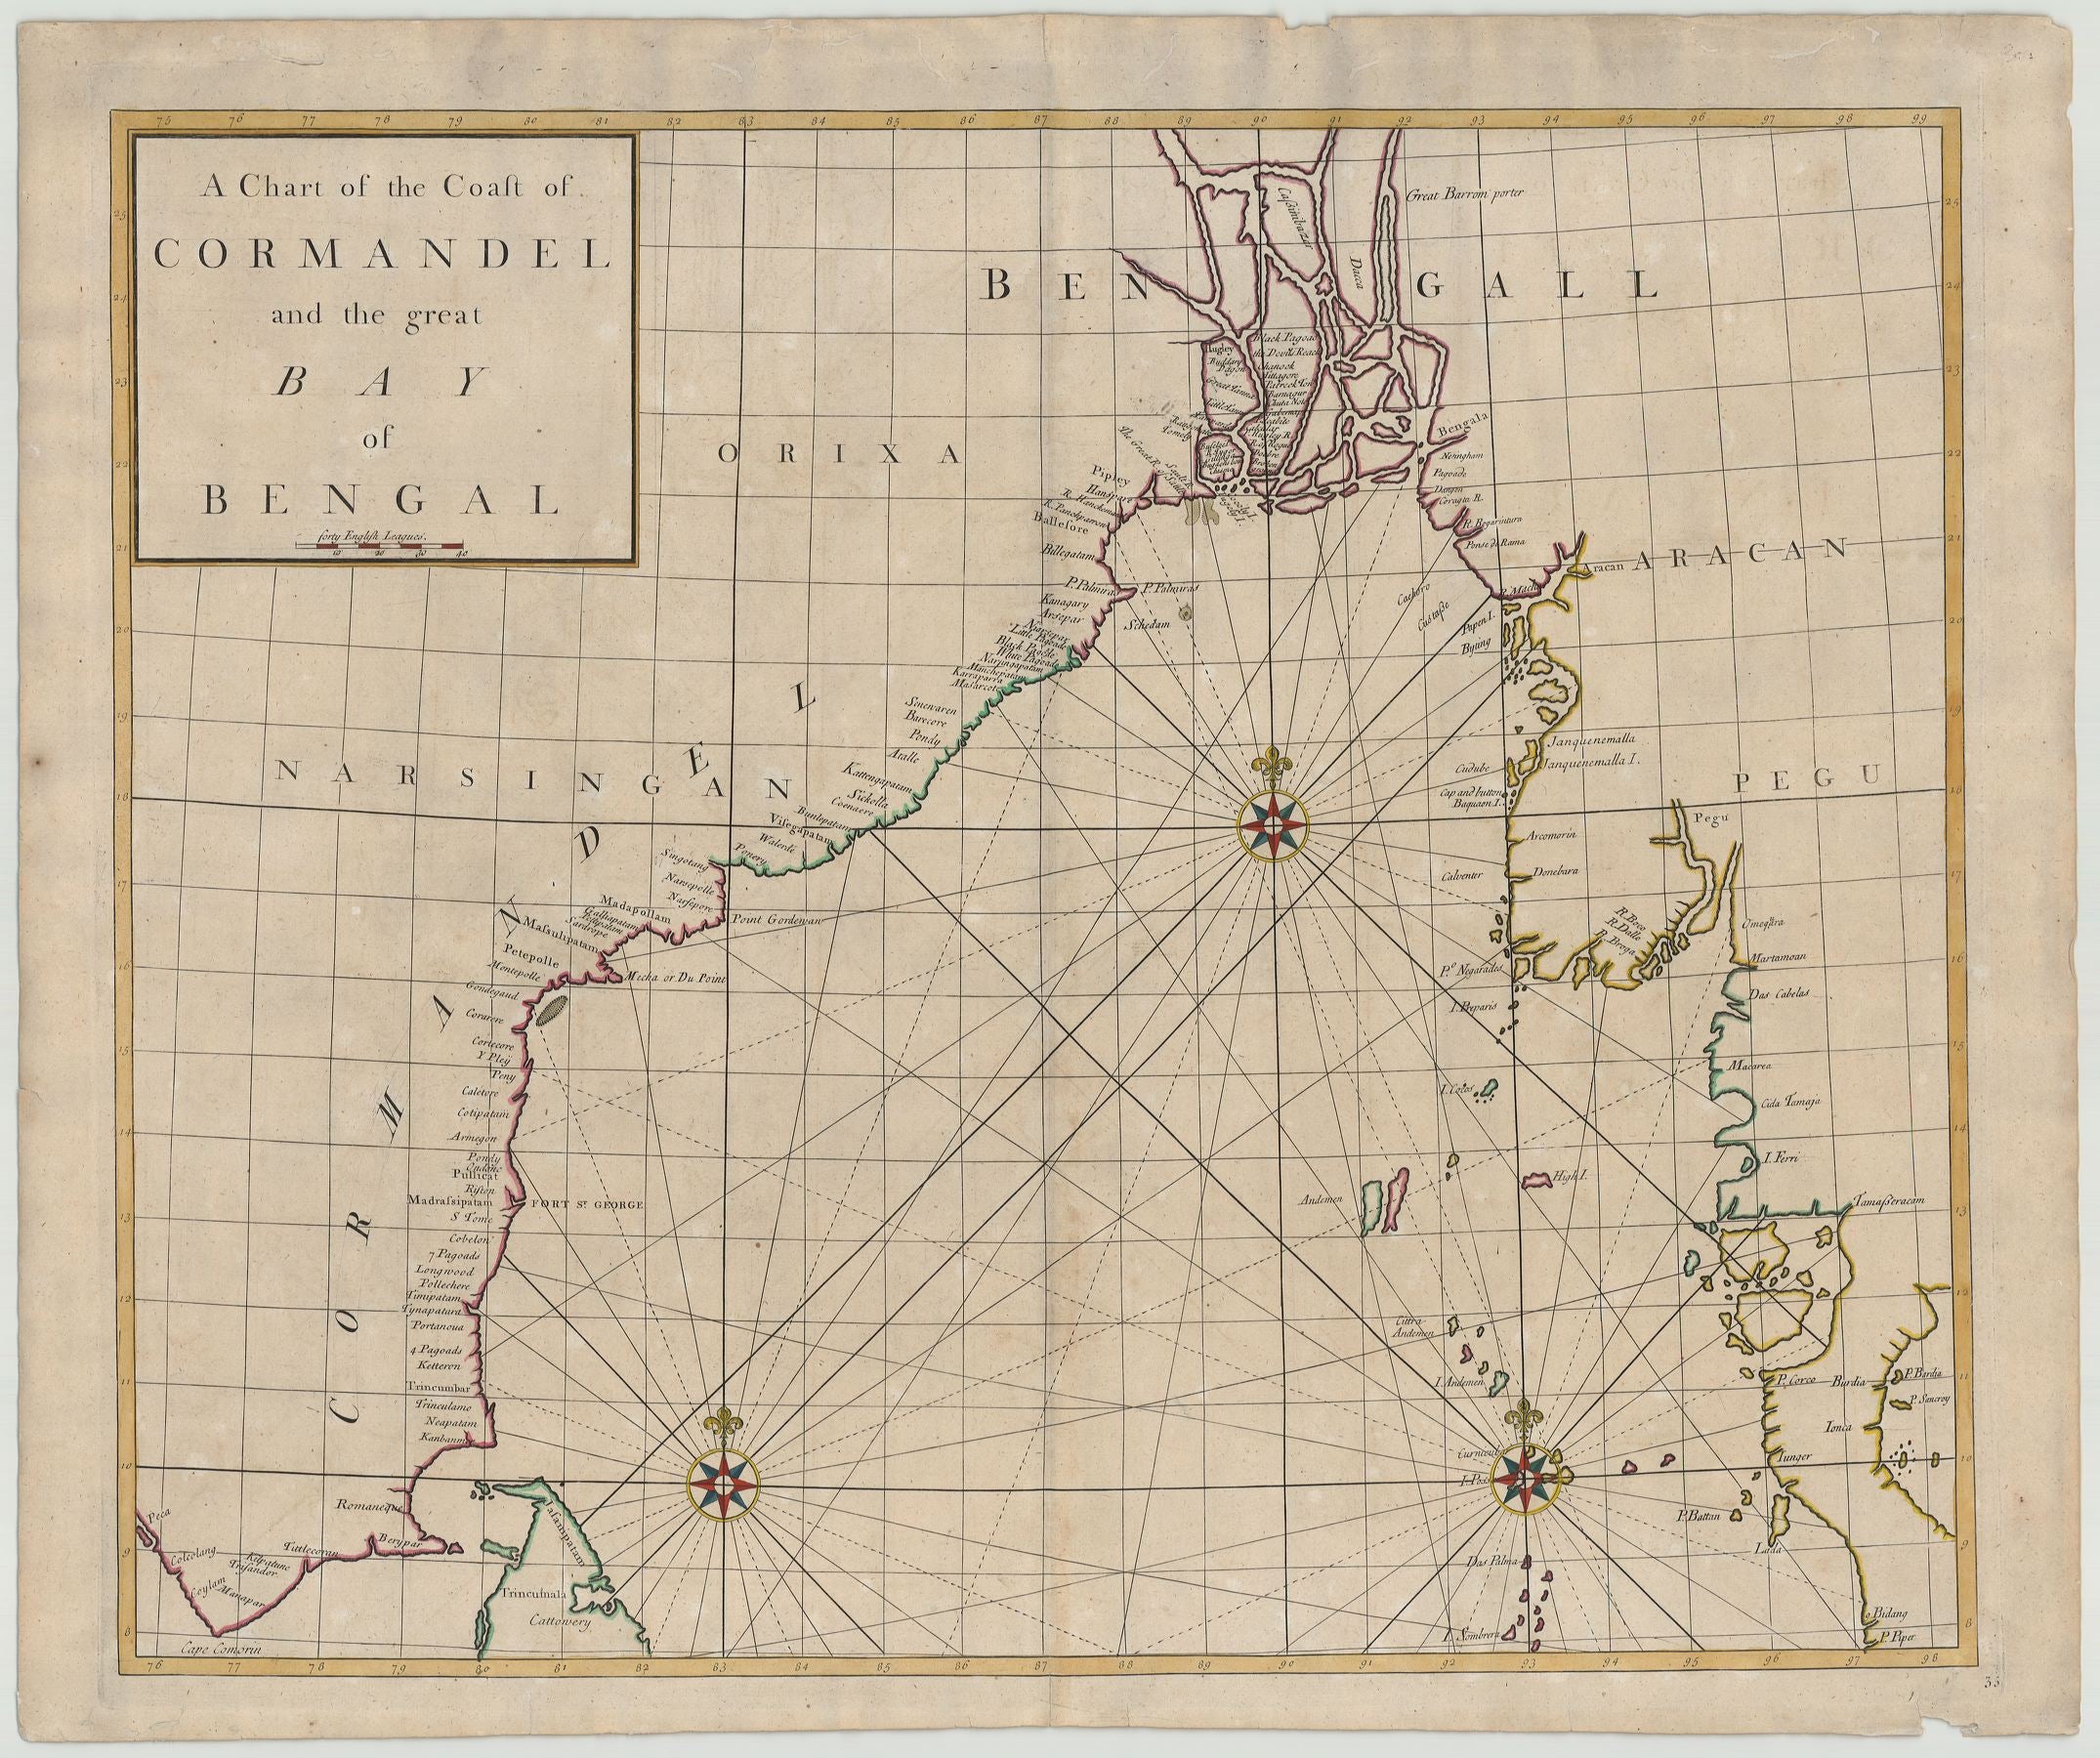 Asien im Jahr 1728 von John Senex, Edmund Halley, Daniel Defoe, John Harris & Nathaniel Cutler